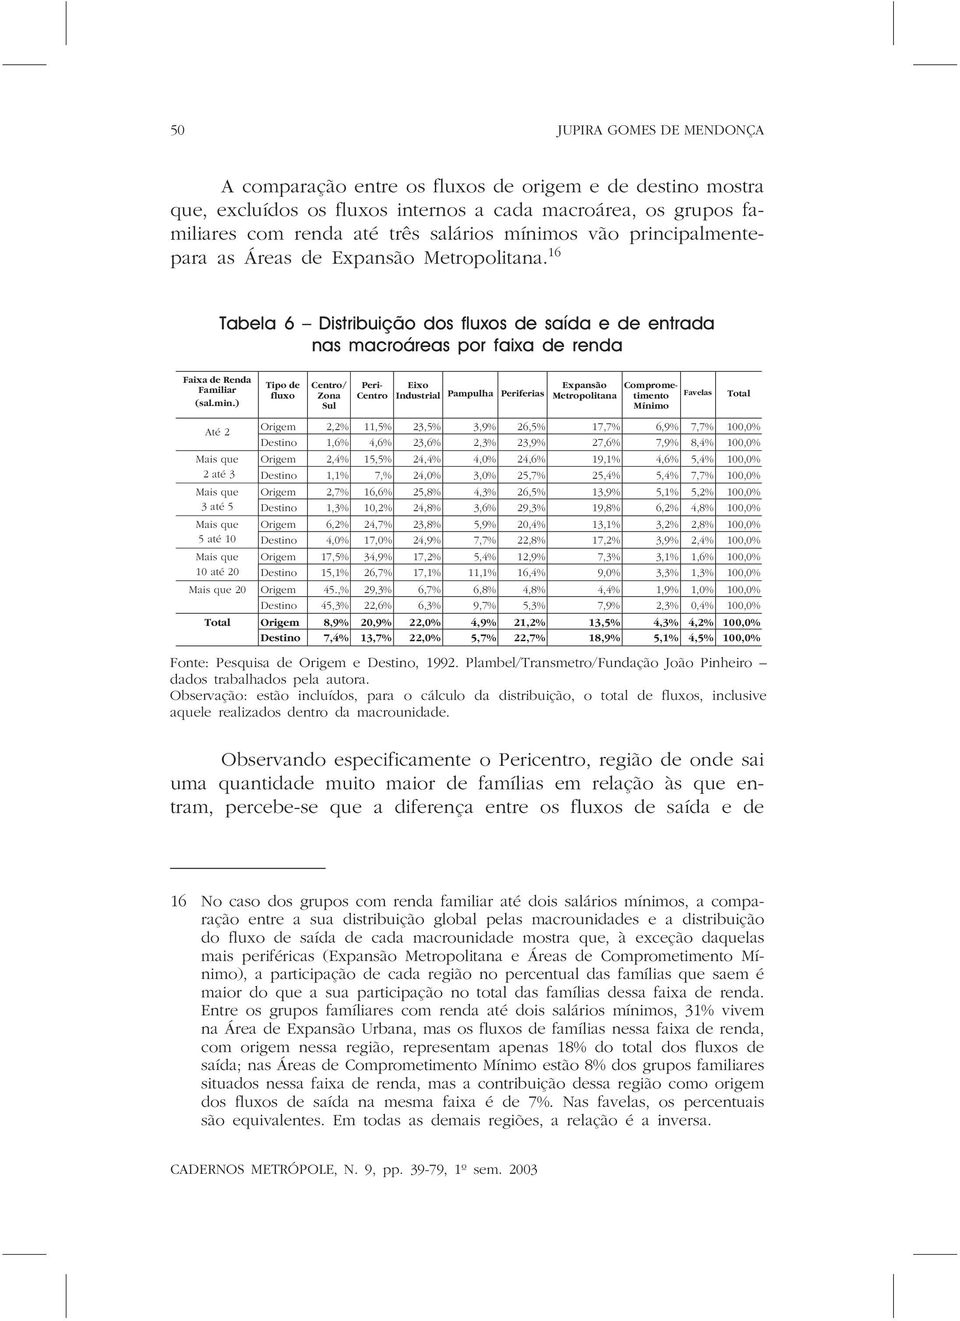 ) Até 2 Tipo de fluxo Centro/ Zona Sul Peri- Centro Eixo Industrial Pampulha Periferias Expansão Comprometimento Metropolitana Favelas Mínimo Origem 2,2% 11,5% 23,5% 3,9% 26,5% 17,7% 6,9% 7,7% 100,0%